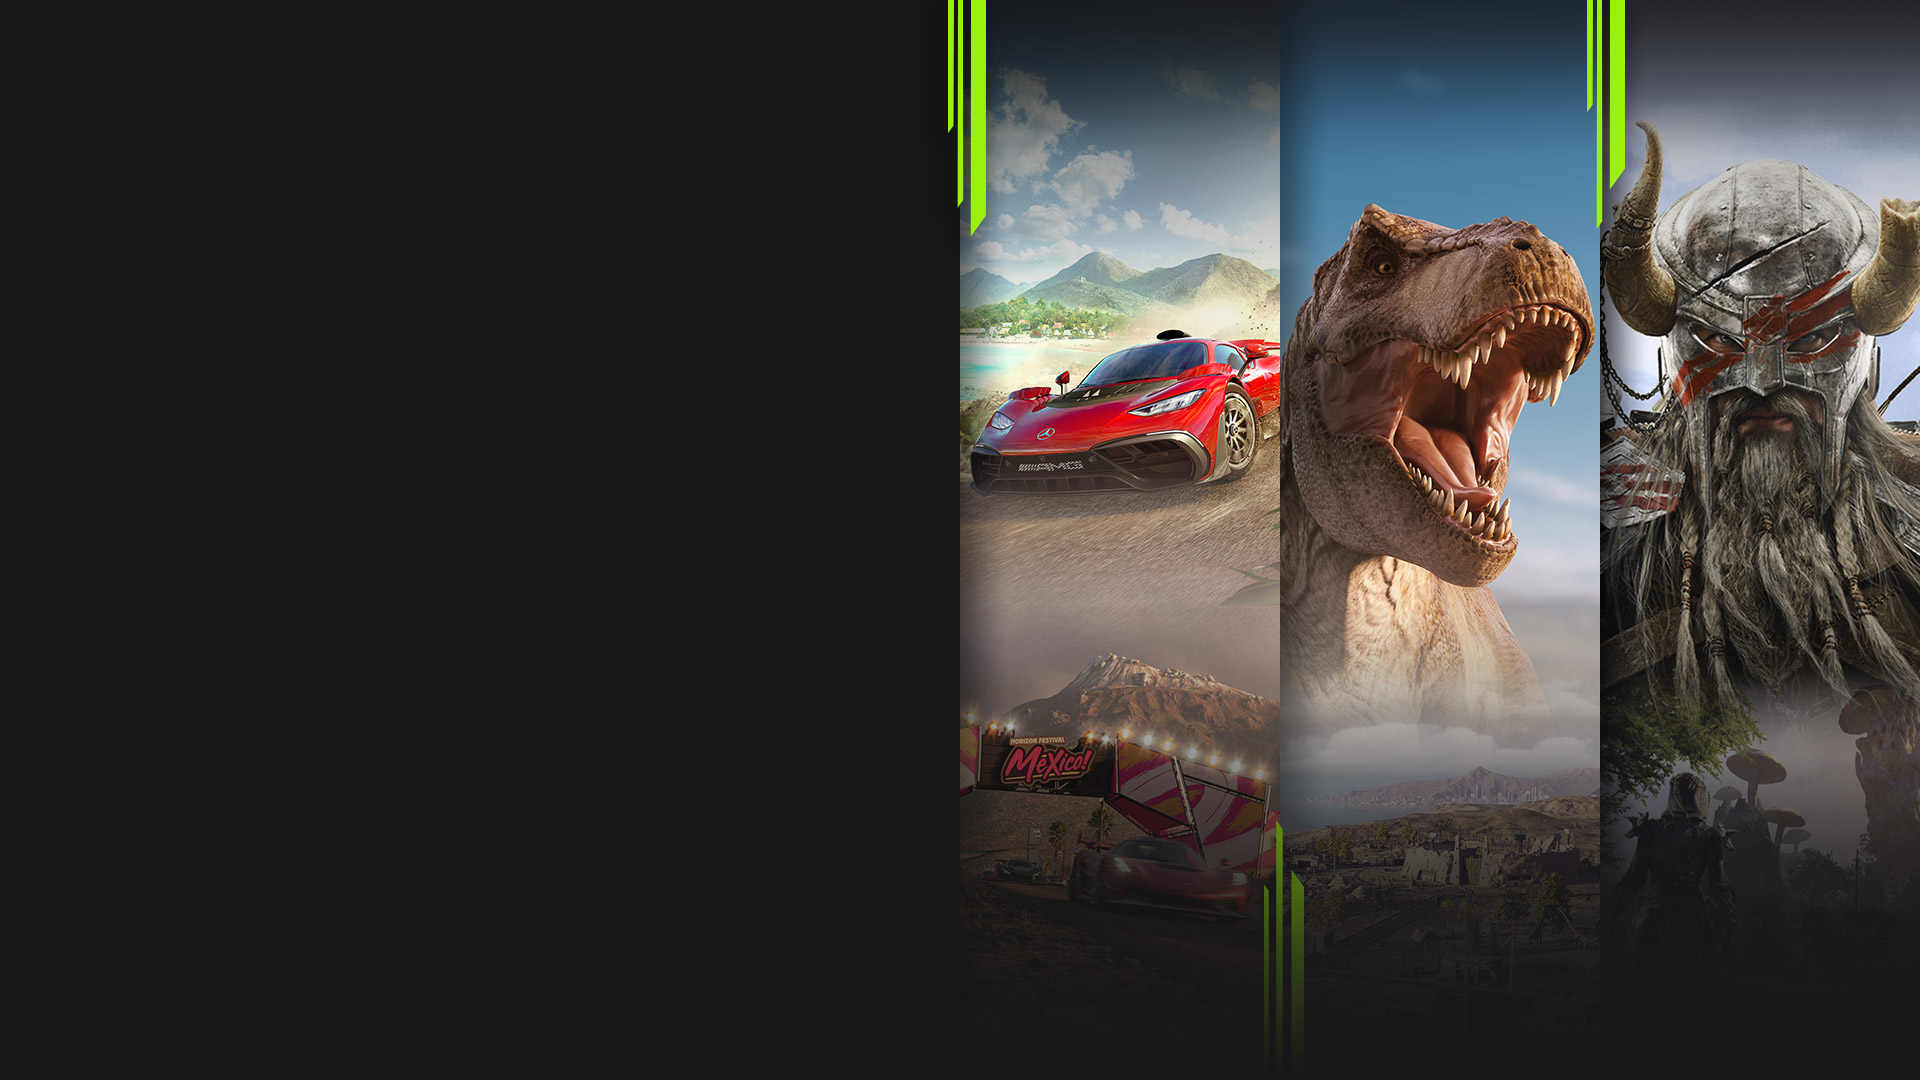 Imágenes de varios juegos disponibles con Xbox Game Pass, entre los que se incluyen Forza Horizon 5, Jurassic World Evolution 2, The Elder Scrolls Online y Halo Infinite.